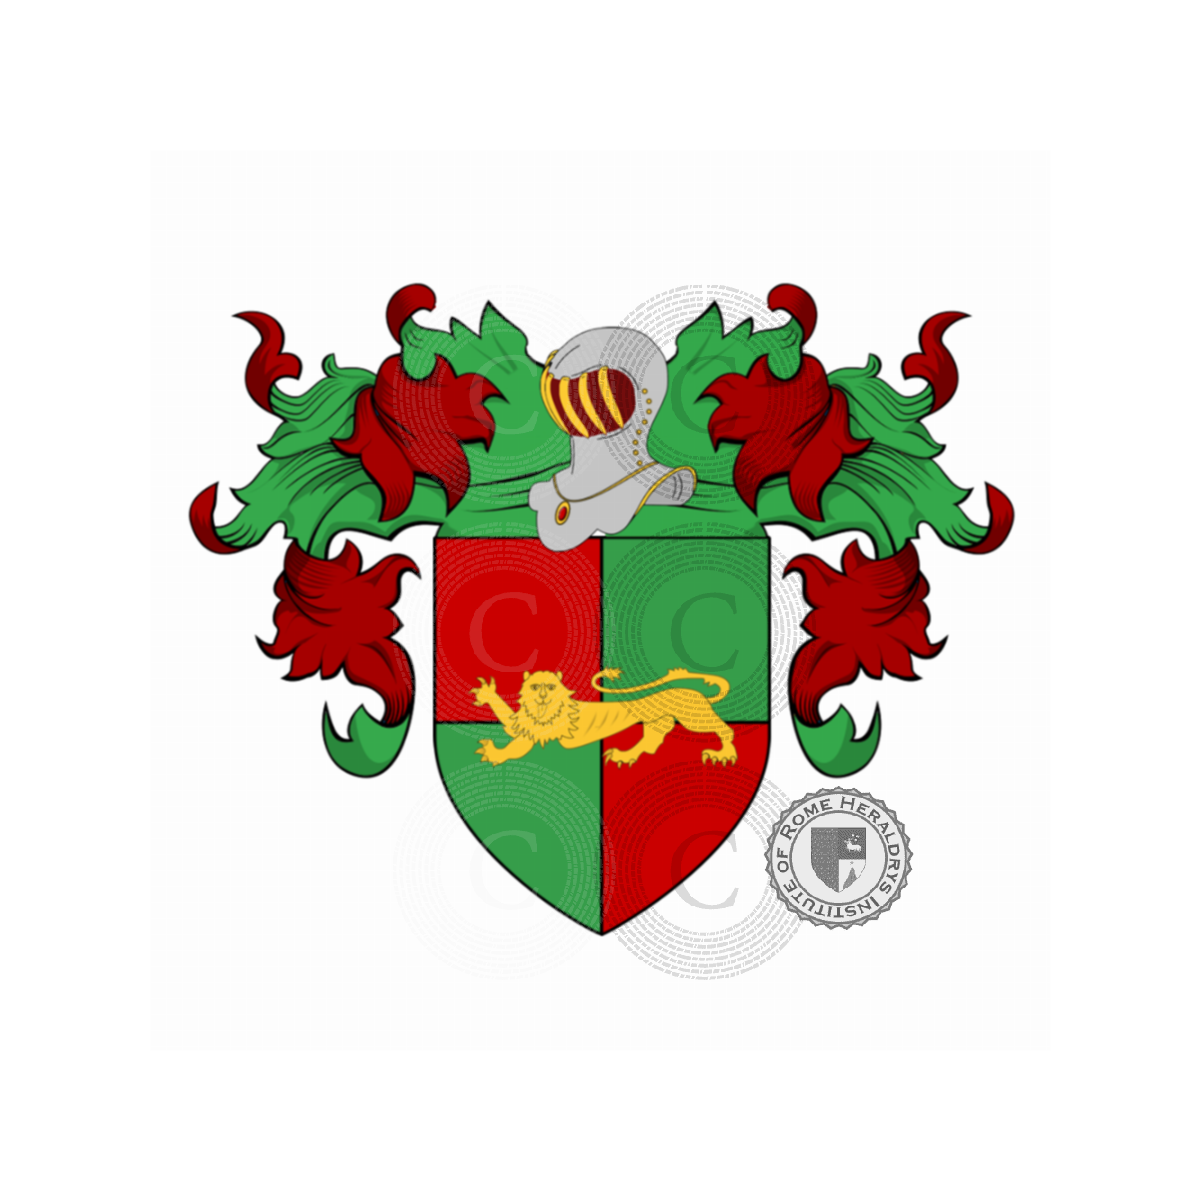 Wappen der FamilieGrassi dall'Avesa o Avesa, Grassi dall'Avesa